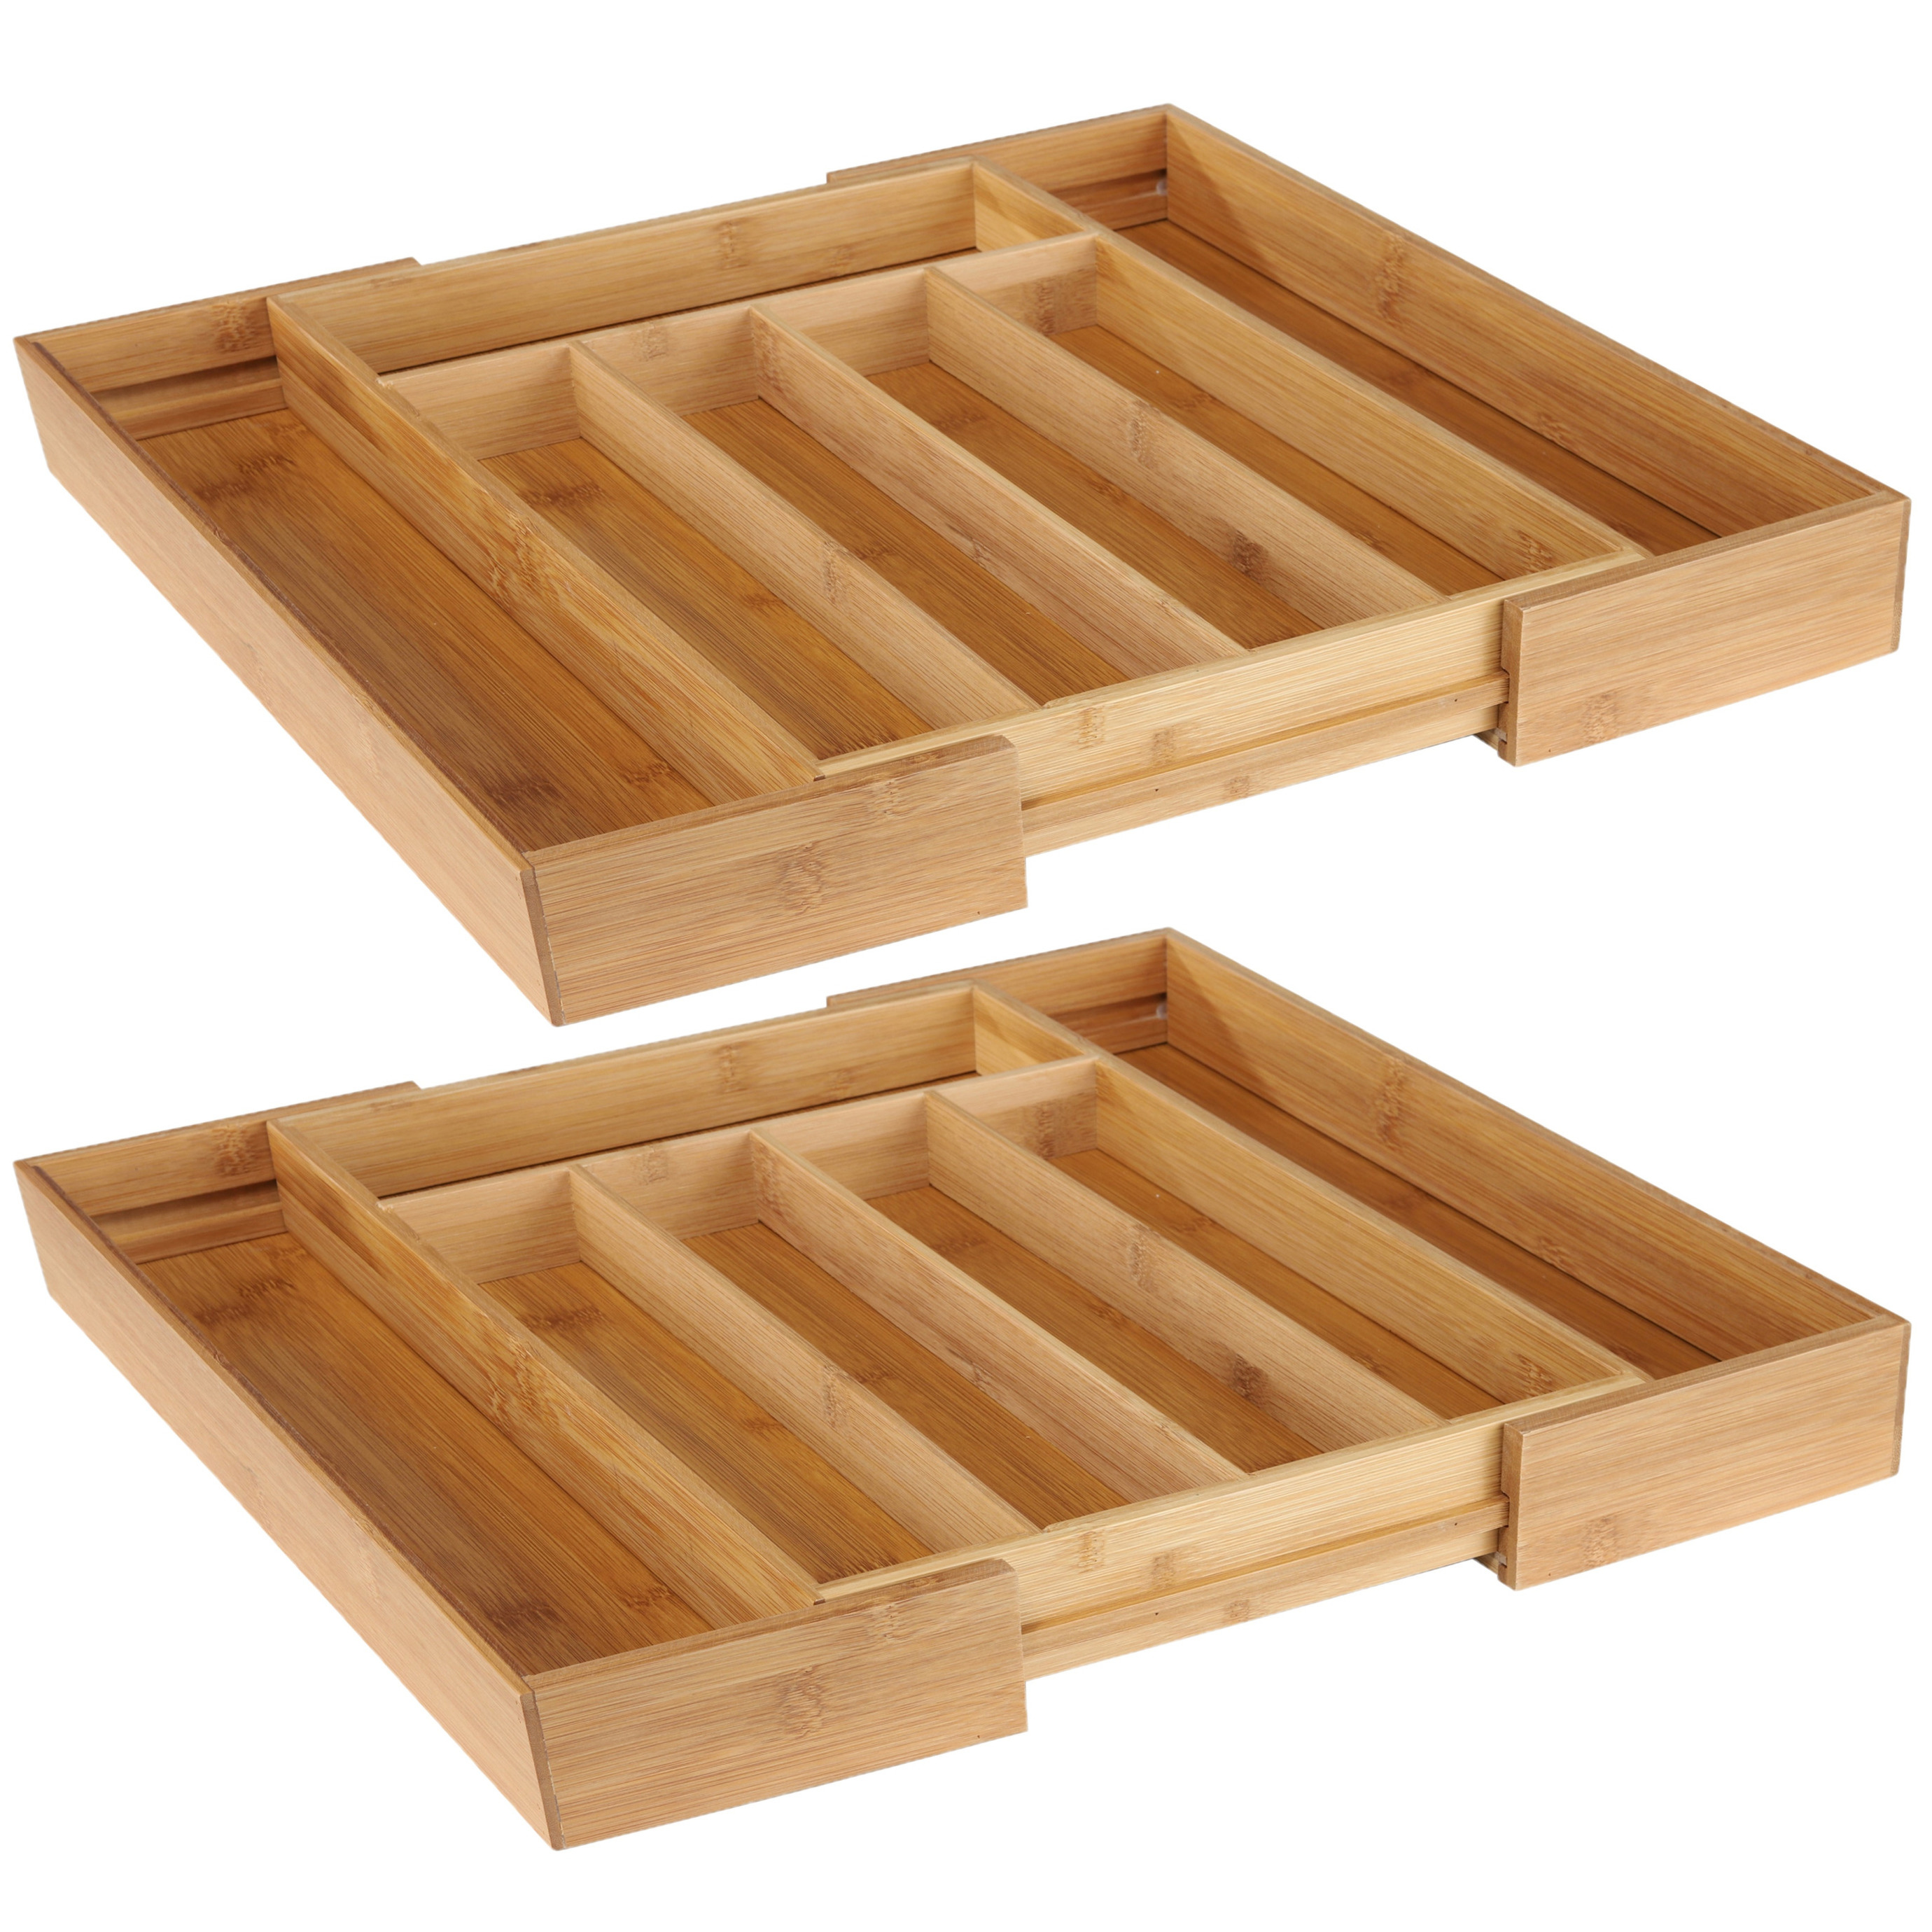 2x stuks uitschuifbare bamboe houten bestekbakken/besteklades 31-48 x 37 x 5 cm -